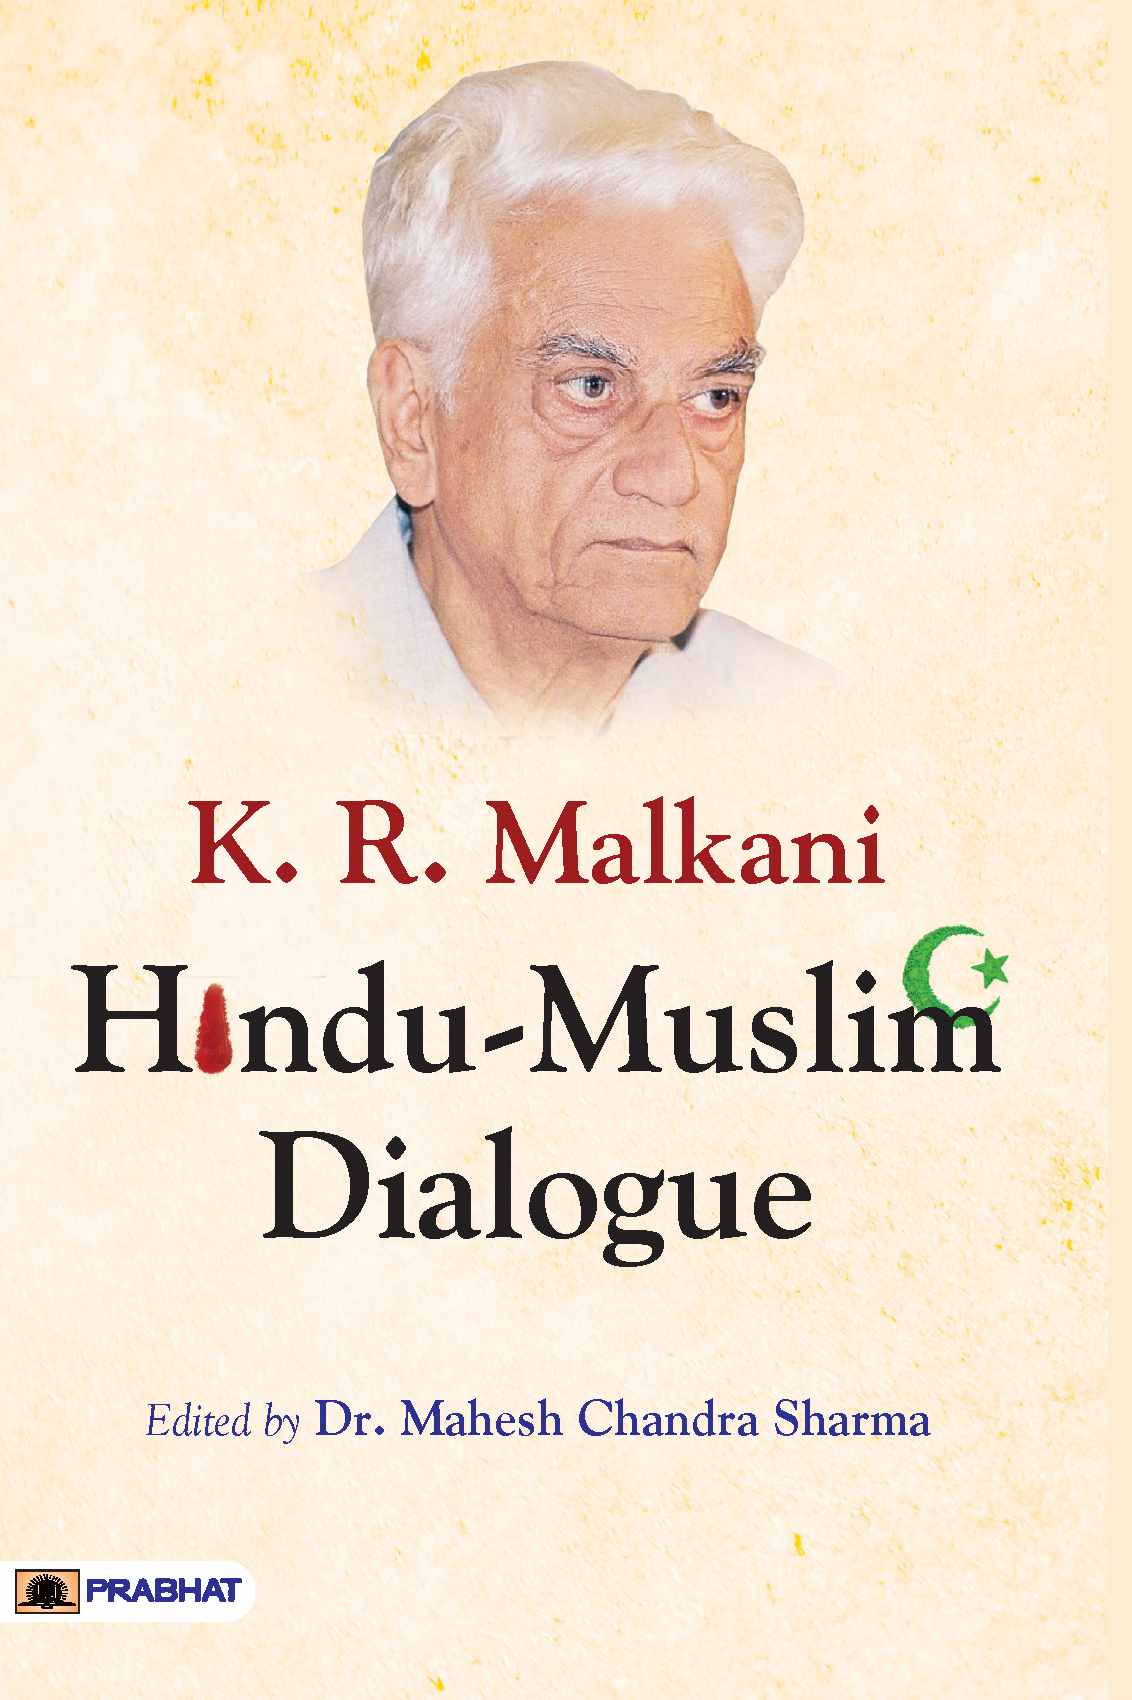 K.R. Malkani Hindu-Muslim Dialogue